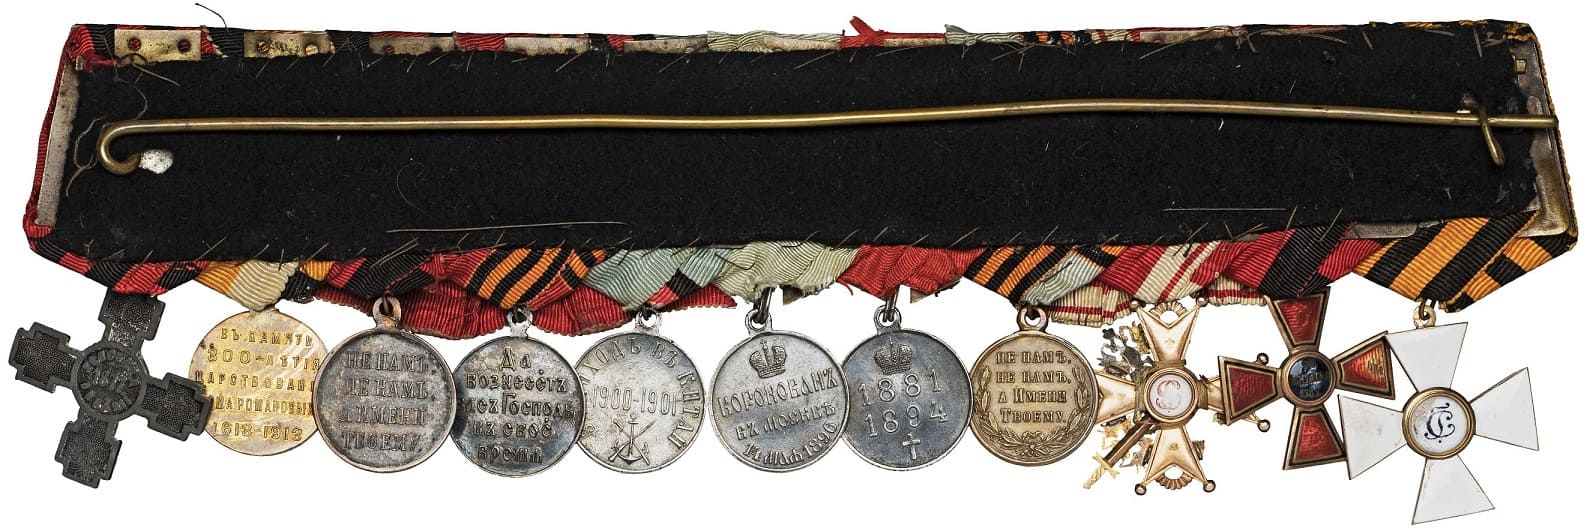 General N.A. Tretyakov  medal bar.jpg